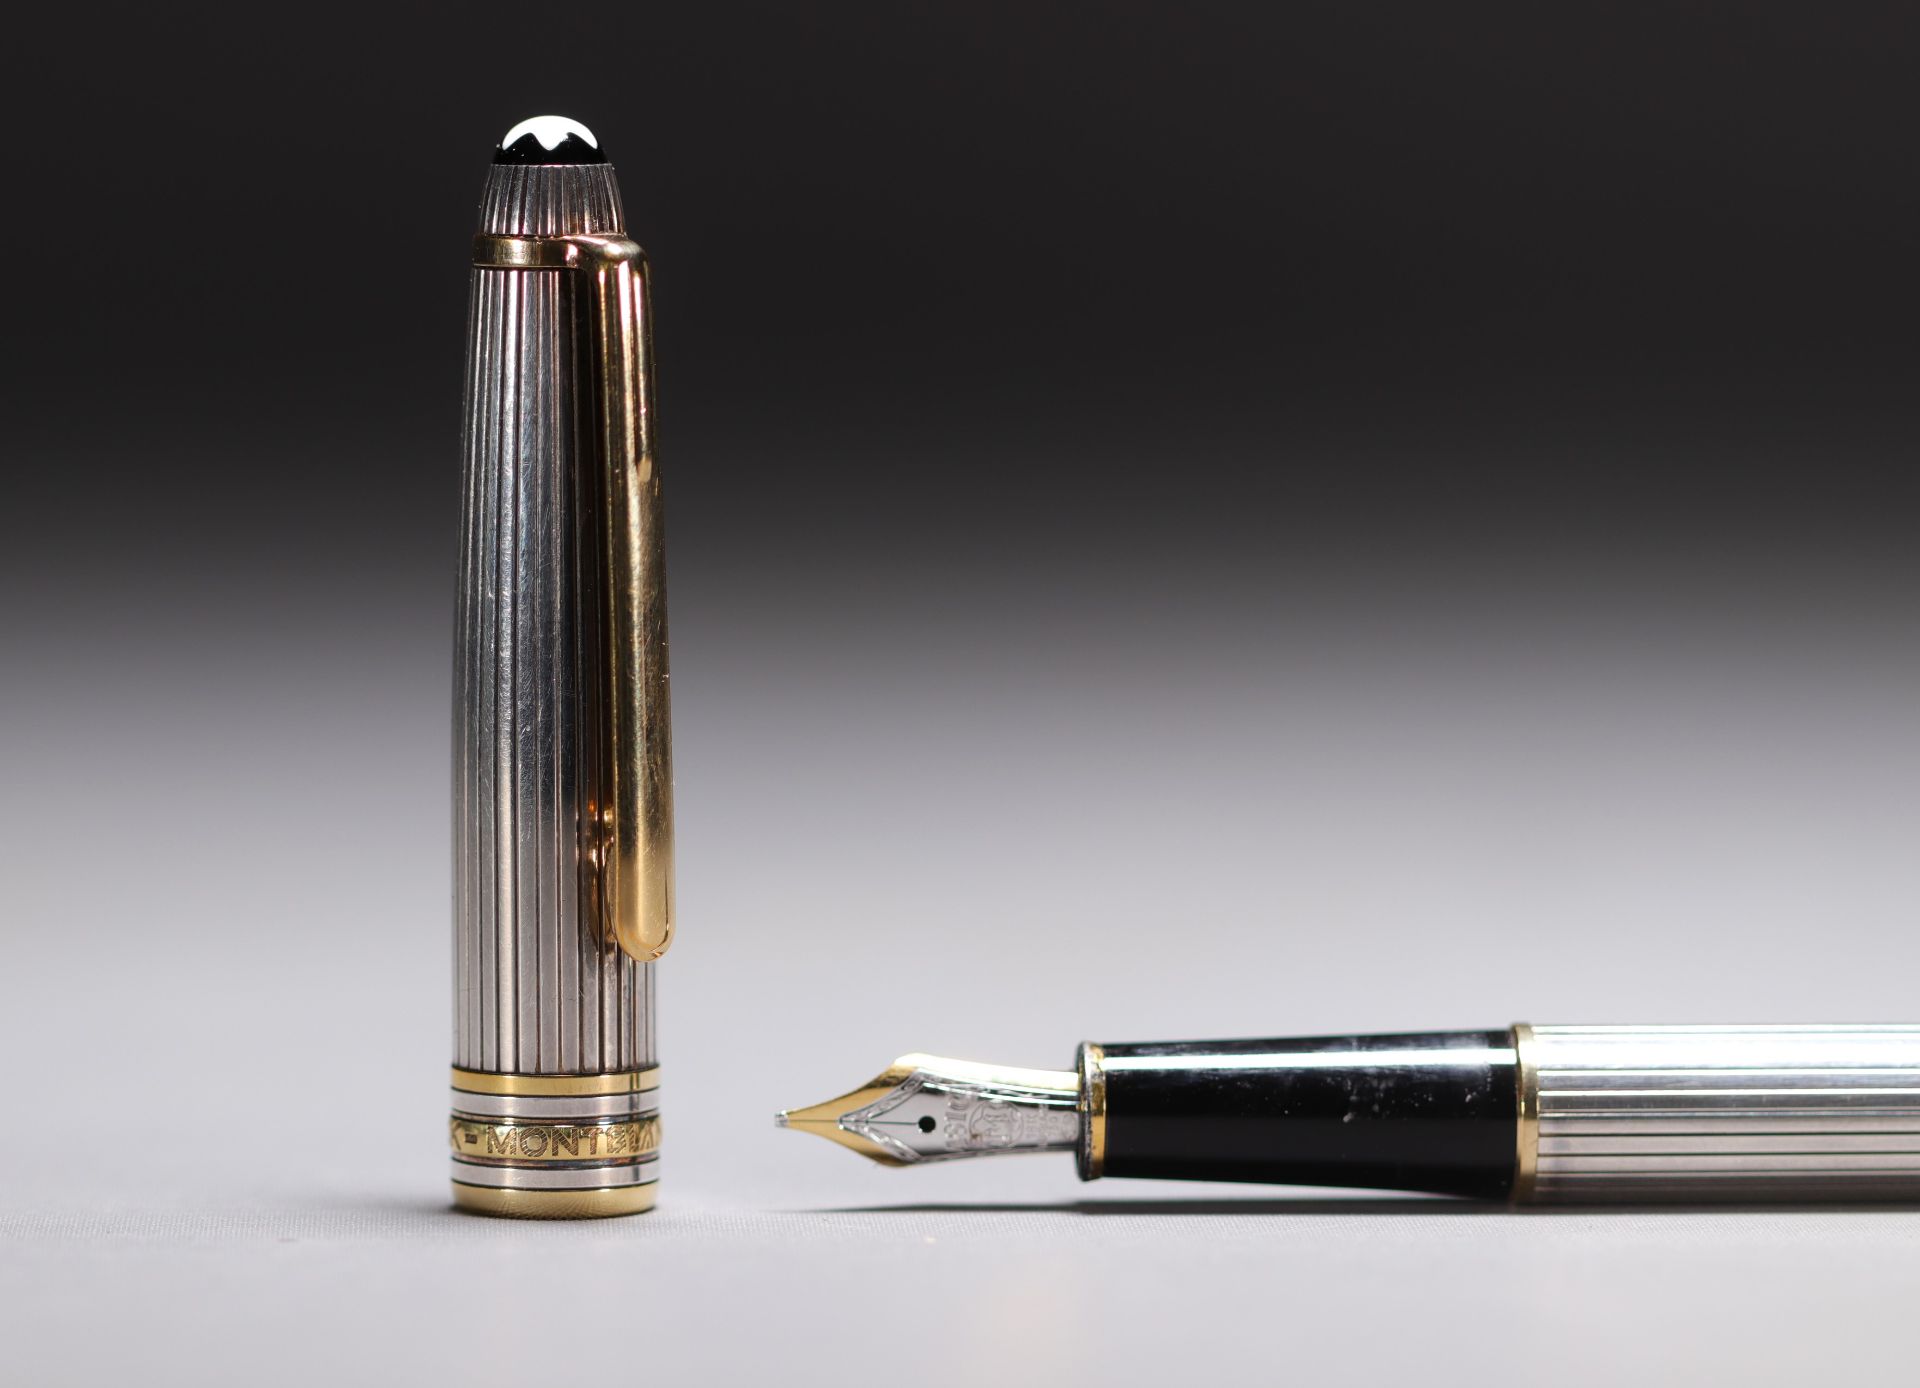 MONTBLANC - MEISTERSTUCK MOZART pen and nib holder set in sterling silver 925, 18K gold nib. - Bild 3 aus 5